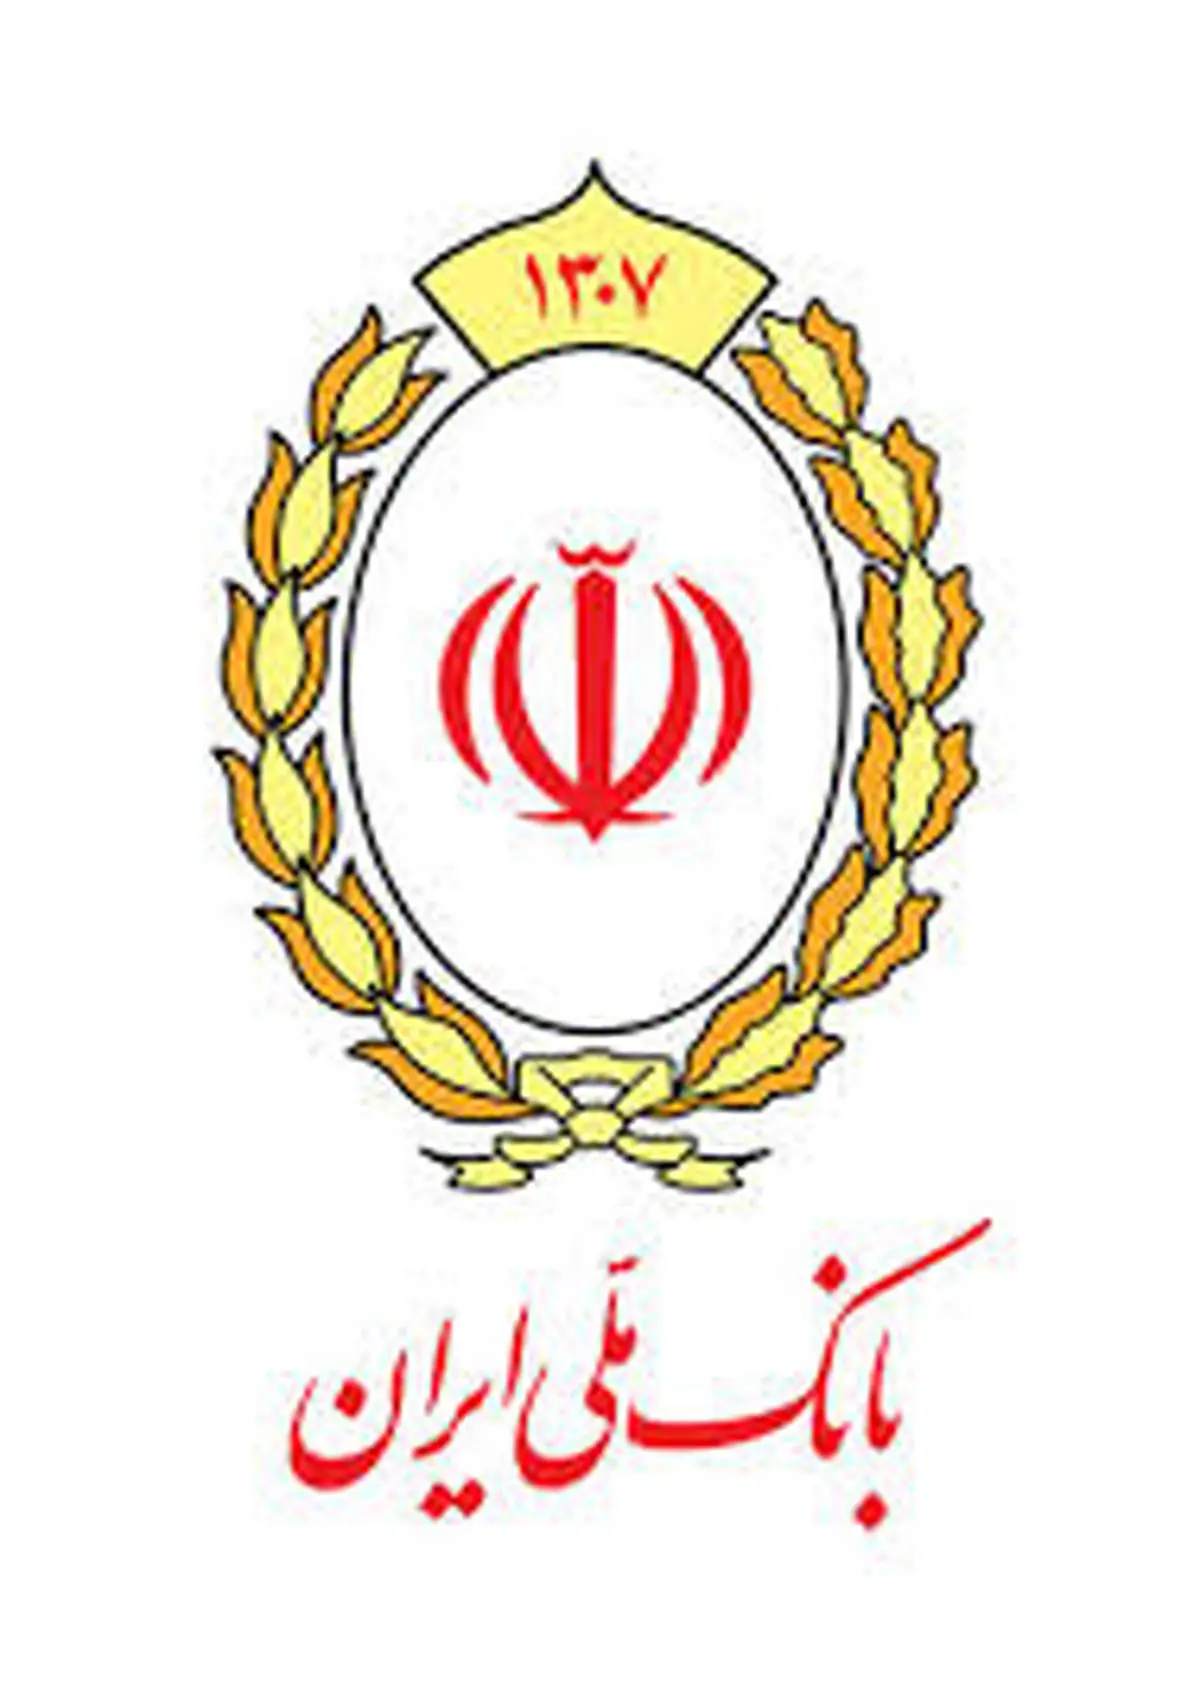 تکمیل سبد دارویی کشور به پشتوانه همه جانبه بانک ملی ایران

